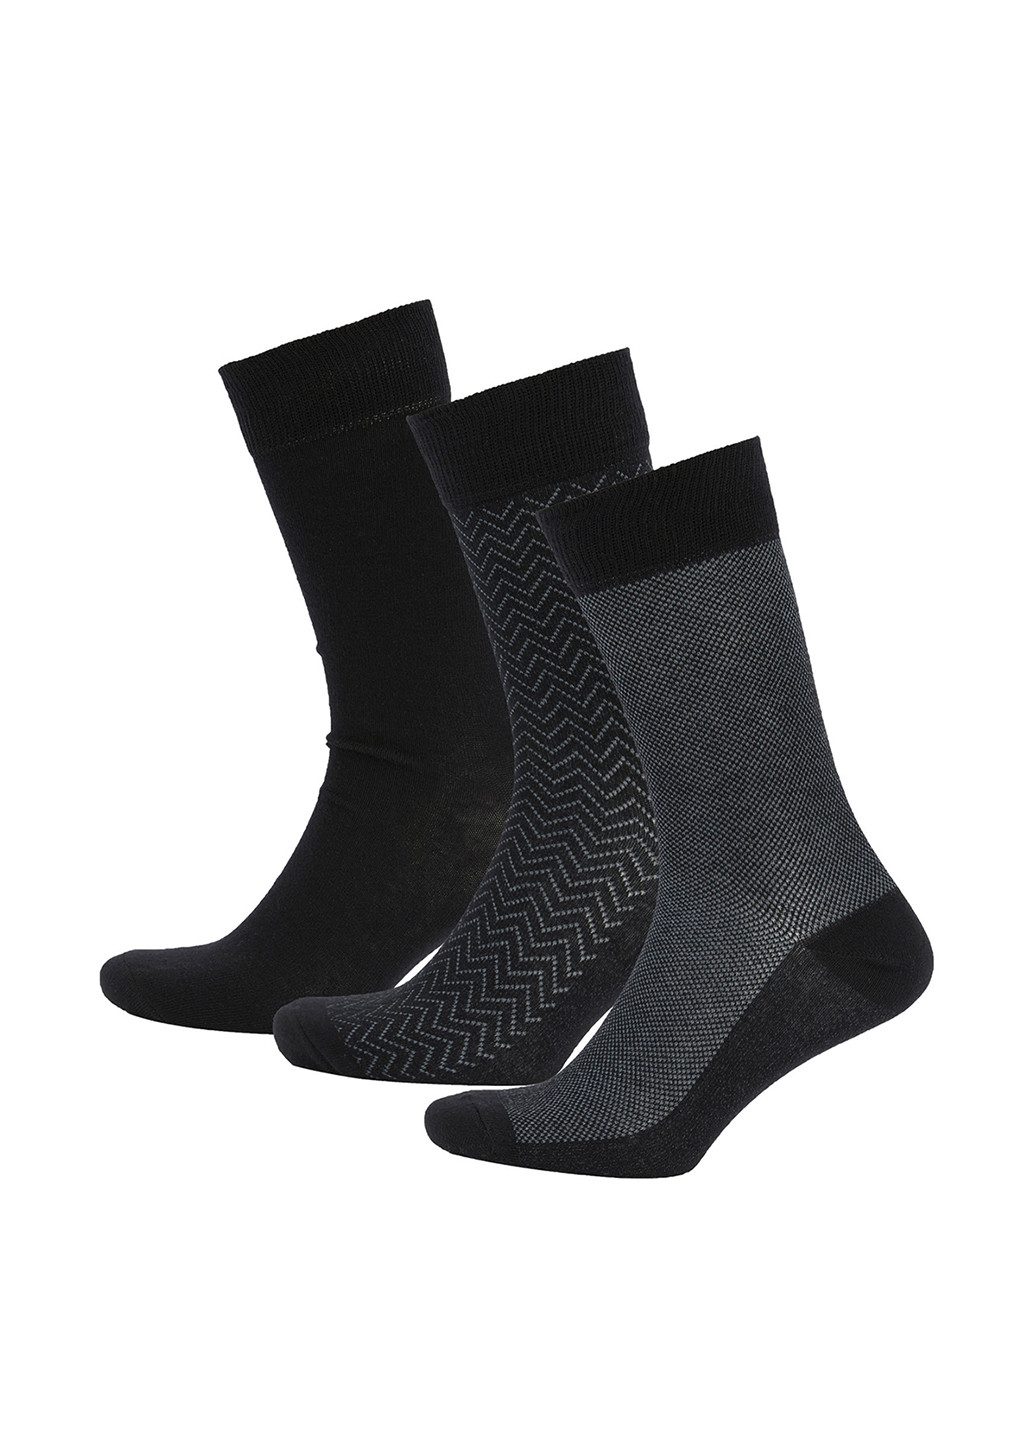 Носки (3 пары) DeFacto геометрические чёрные повседневные